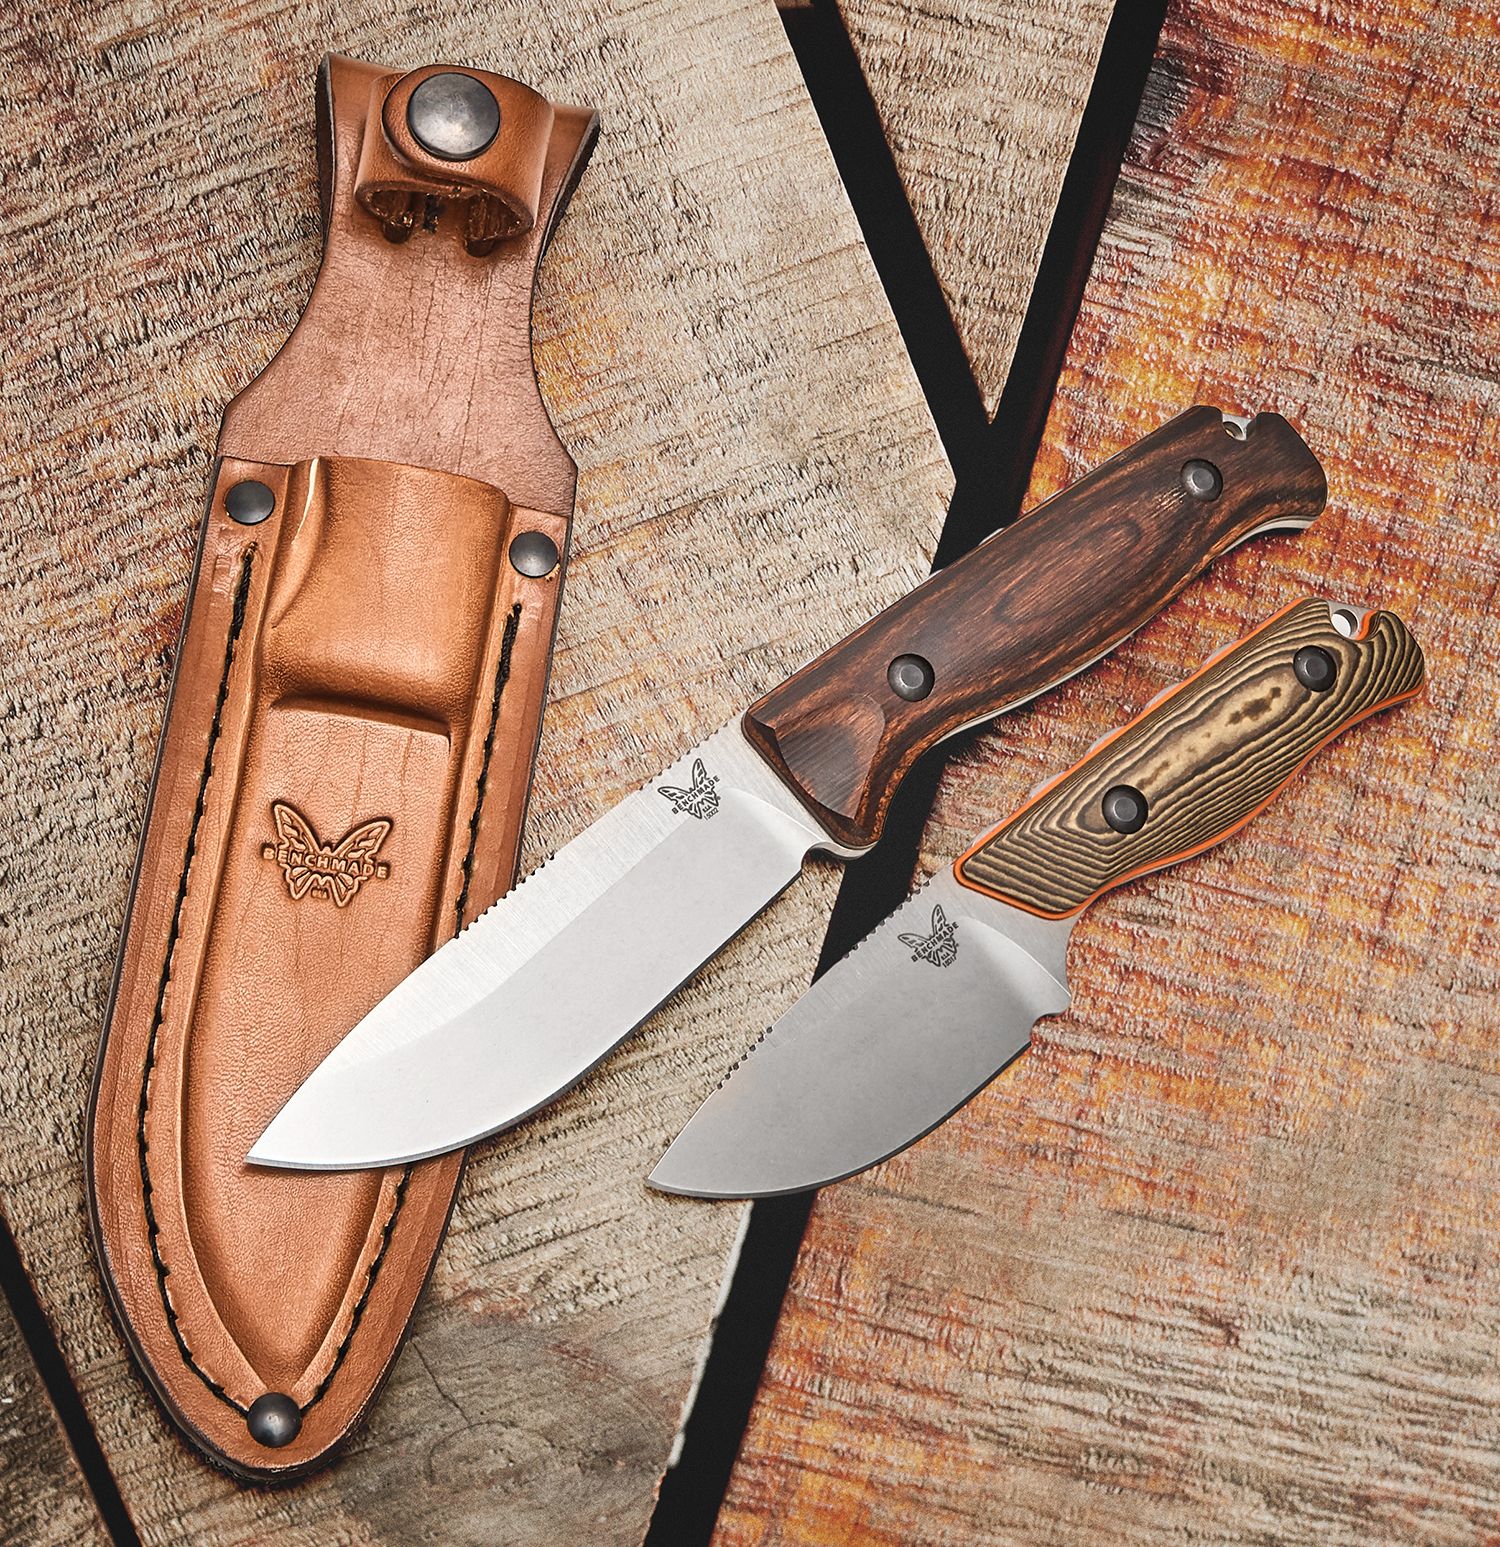 Benchmade - Hidden Canyon Hunter S30V 15017 - coltello fisso